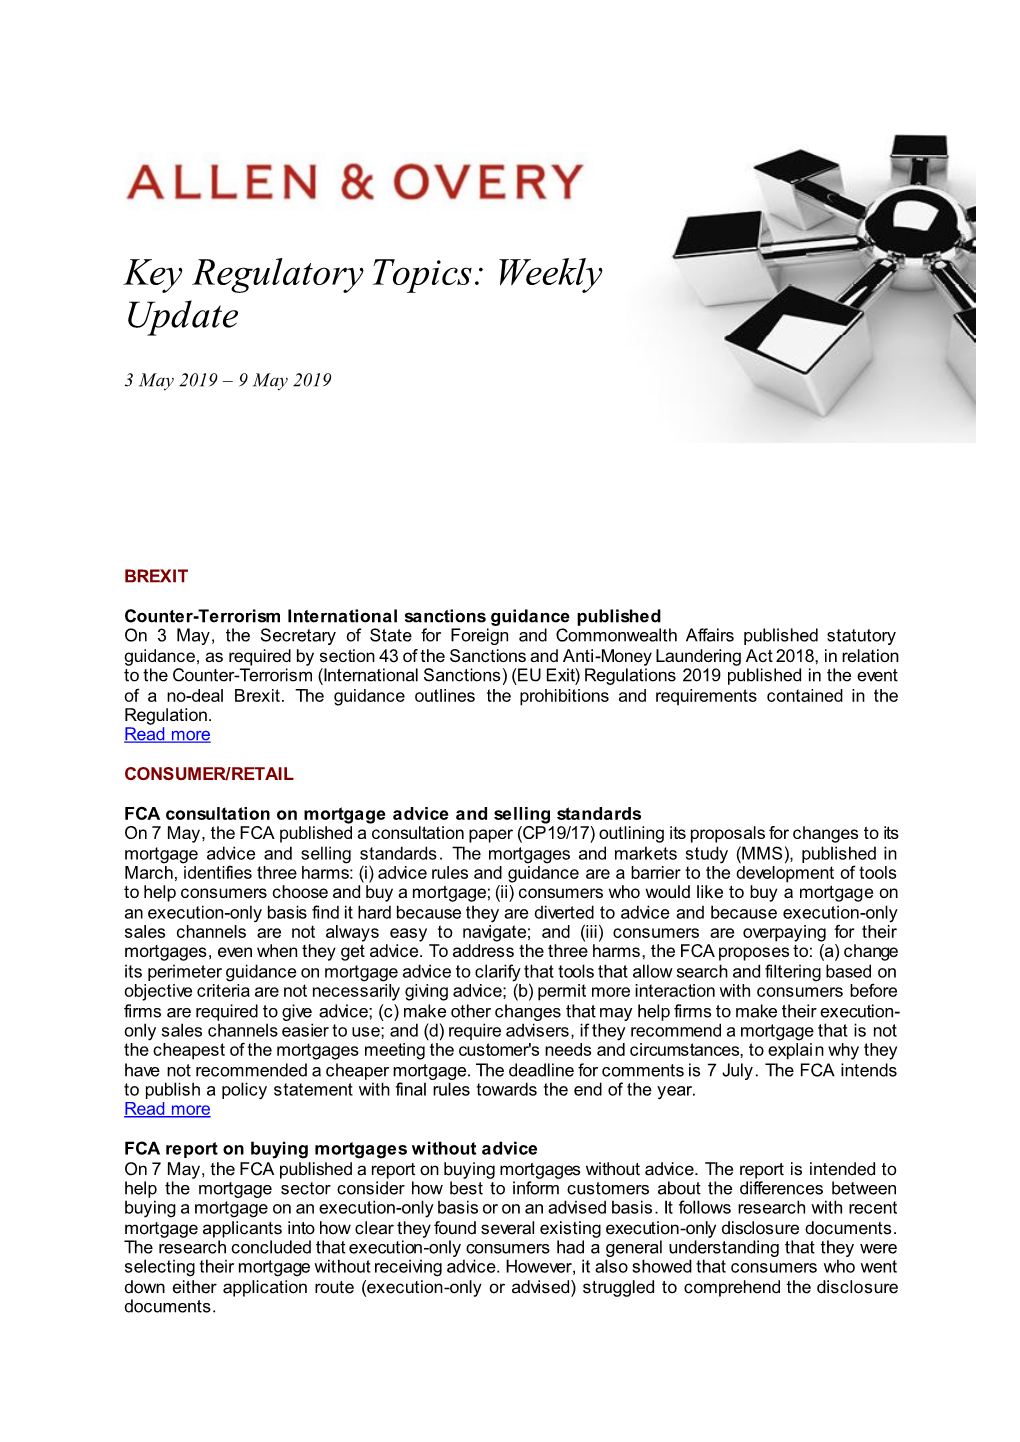 Key Regulatory Topics: Weekly Update